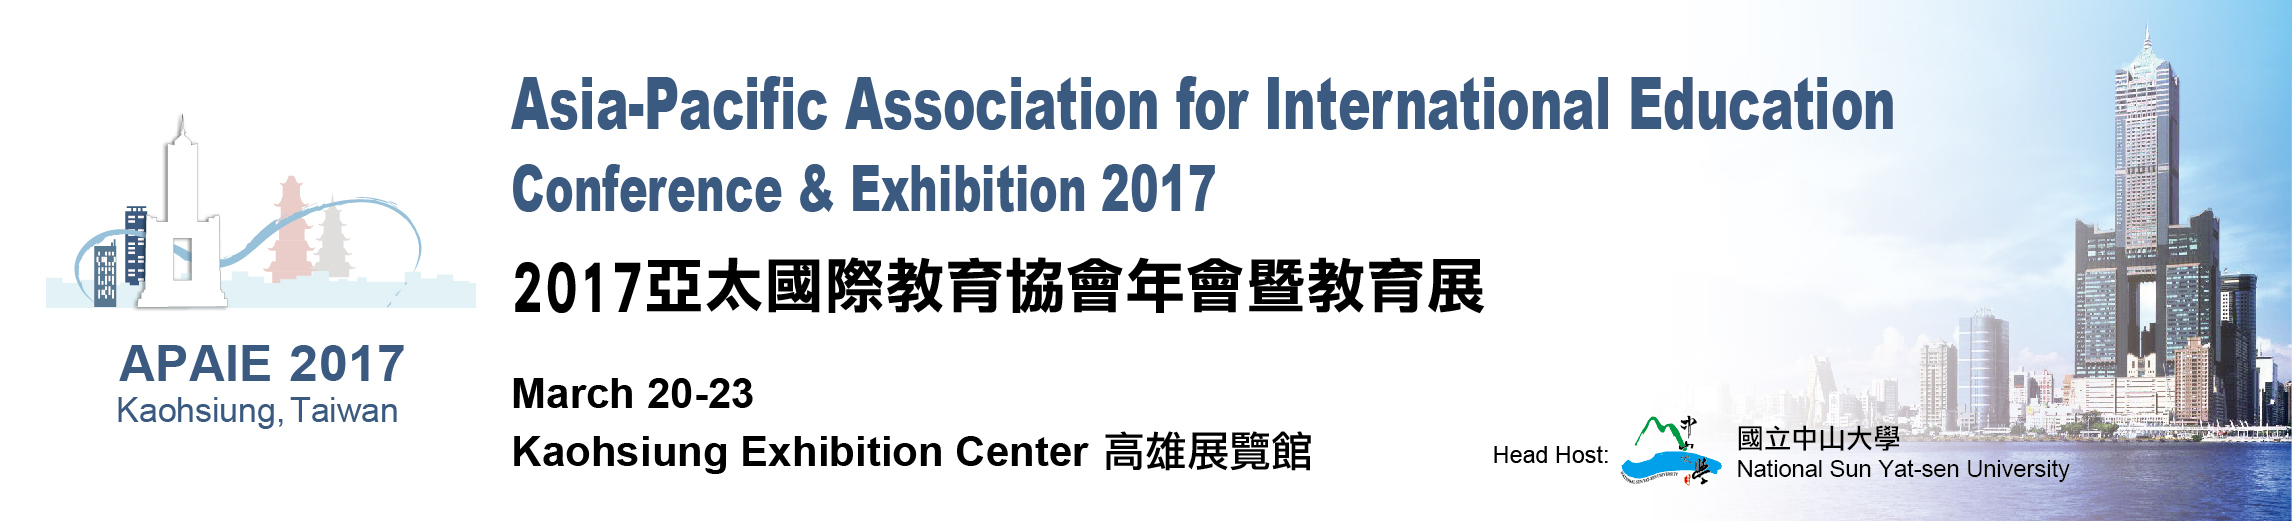 2017年亞太國際教育協會年會標誌